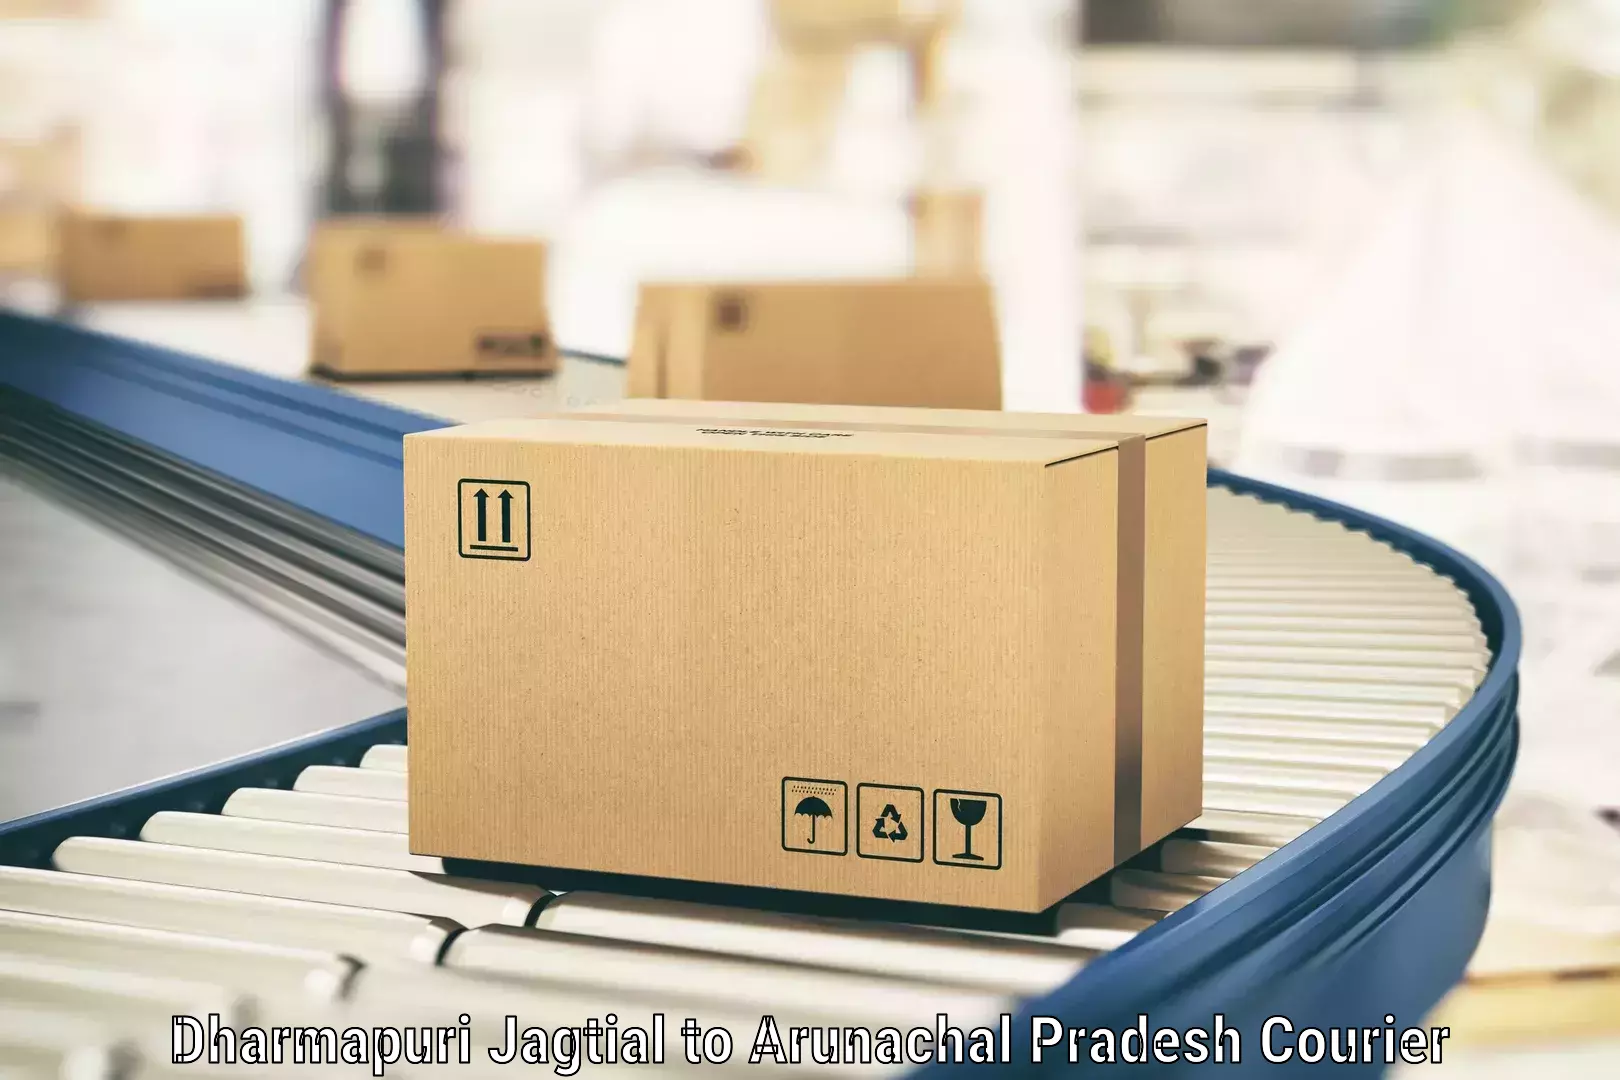 High-speed parcel service Dharmapuri Jagtial to Kharsang